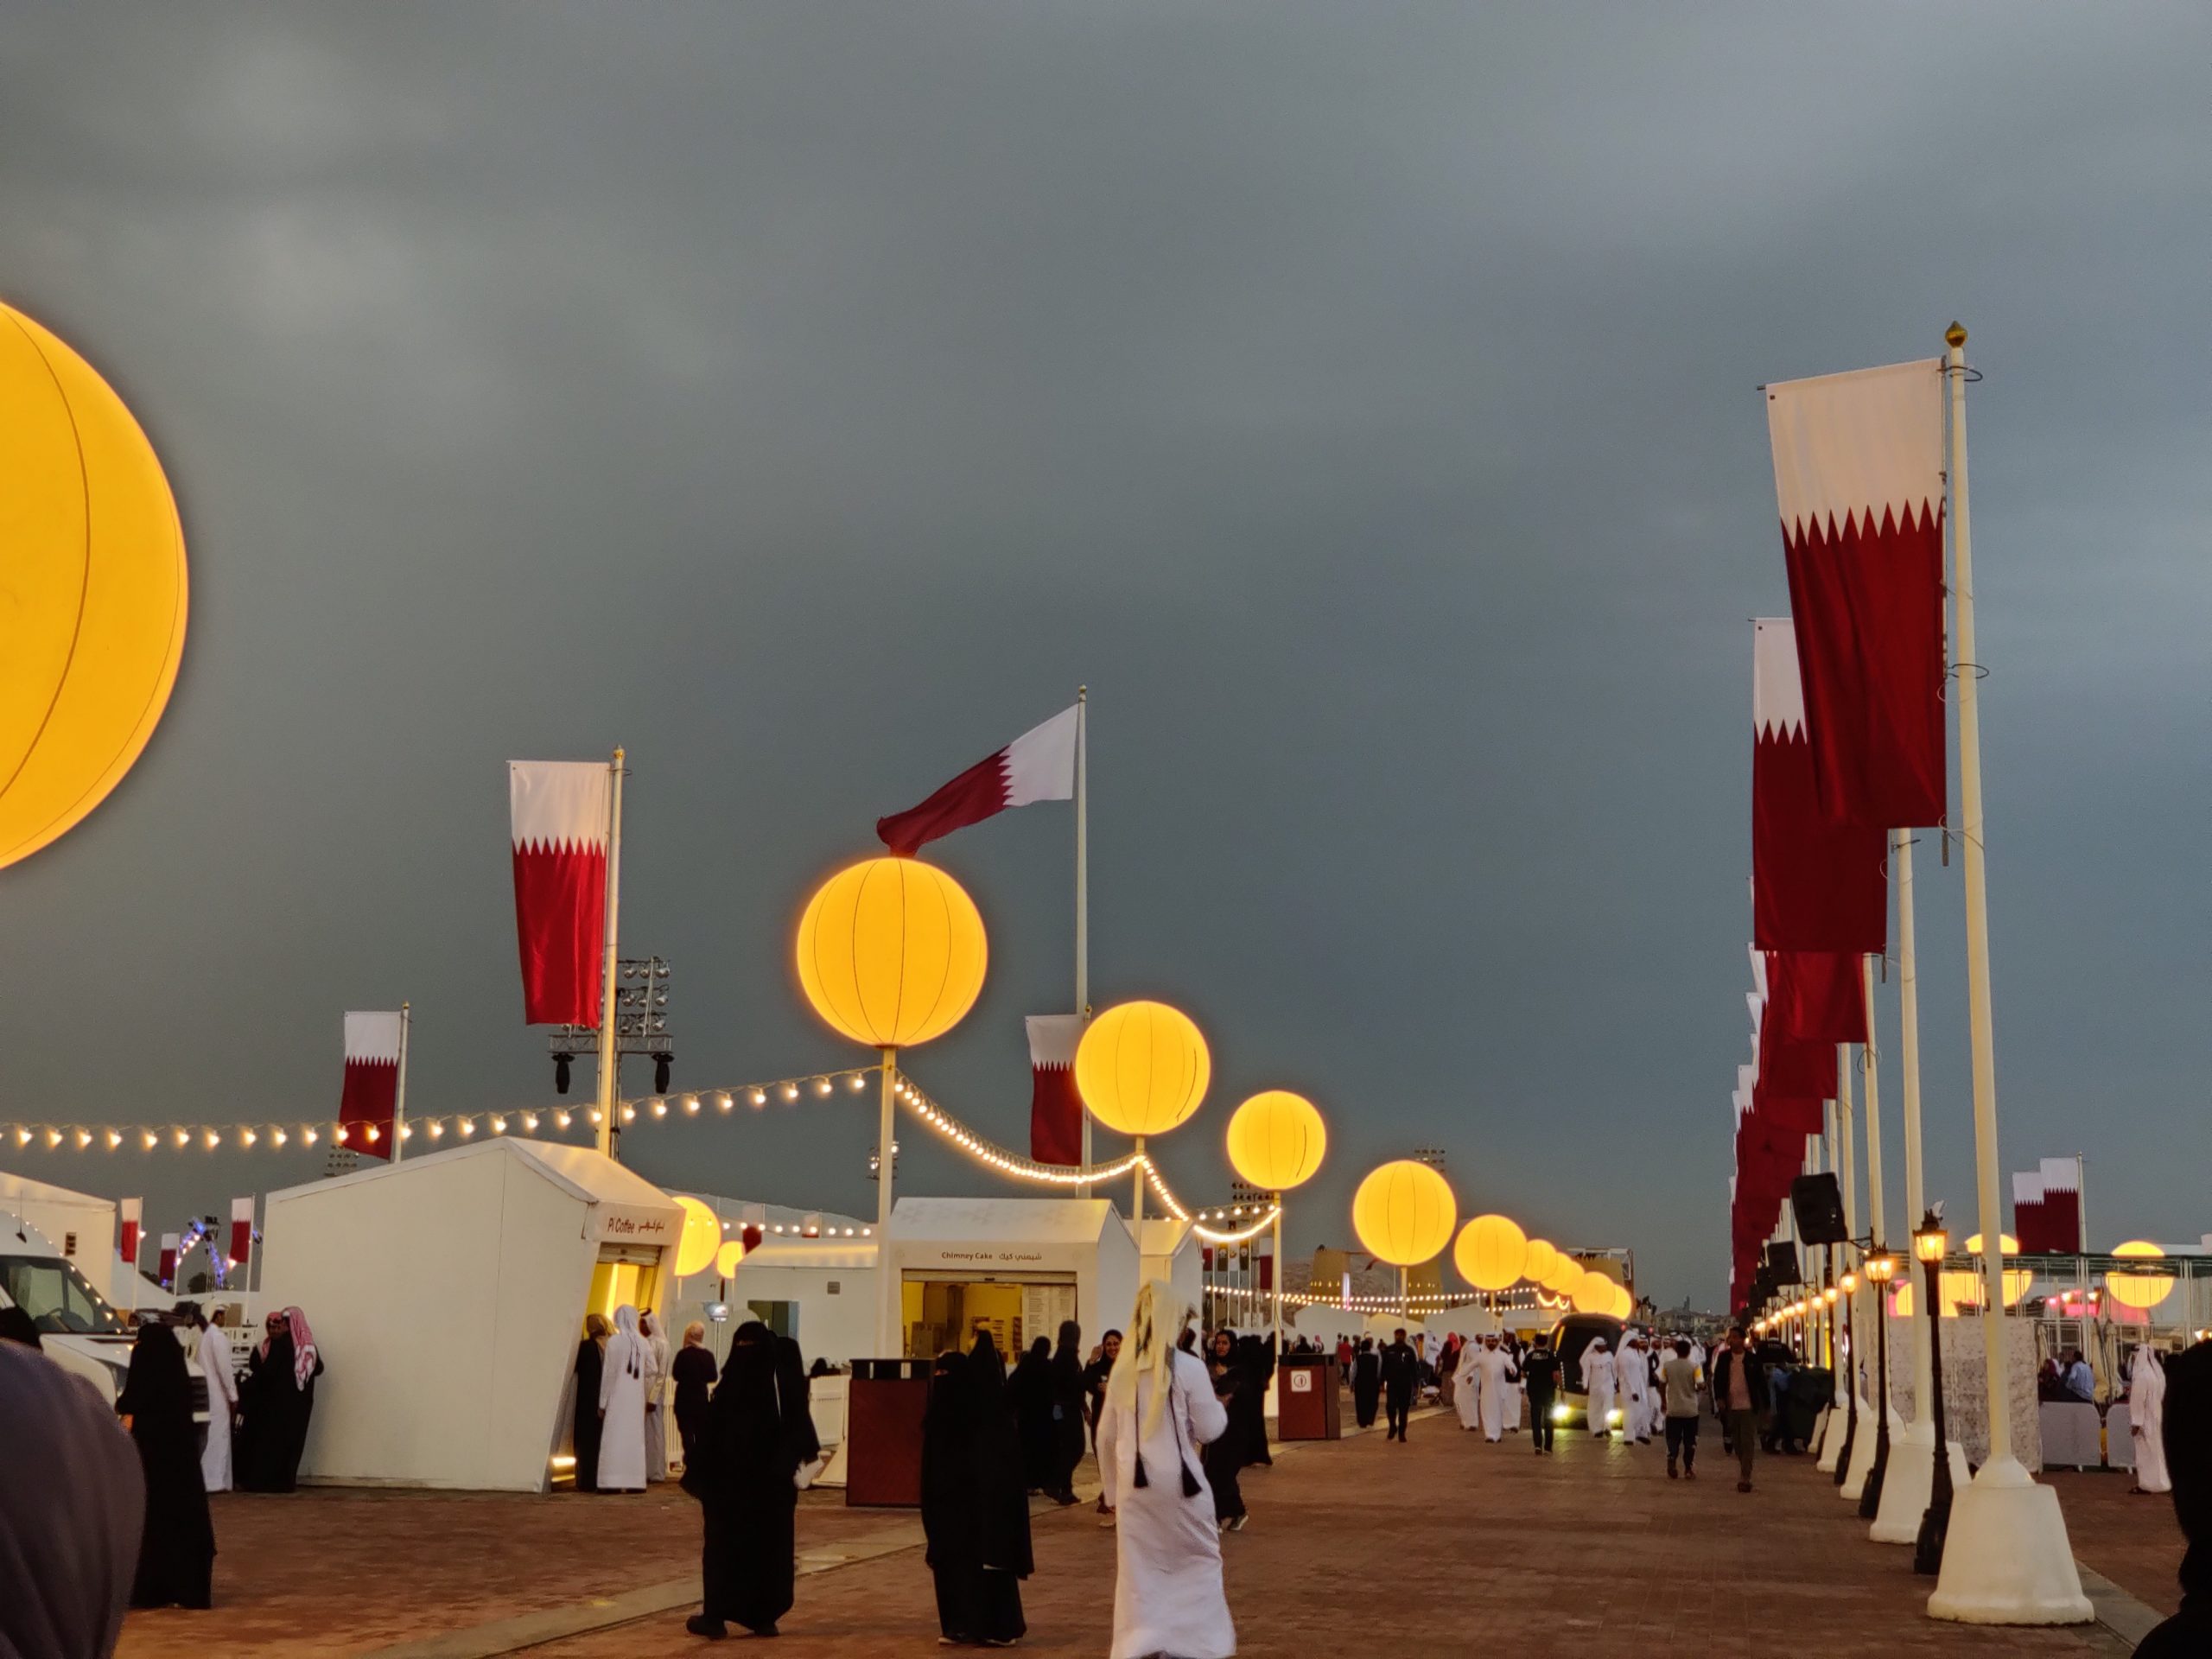 Qatar National Day Celebrations Kick Off at Darb Al Saai on December 10